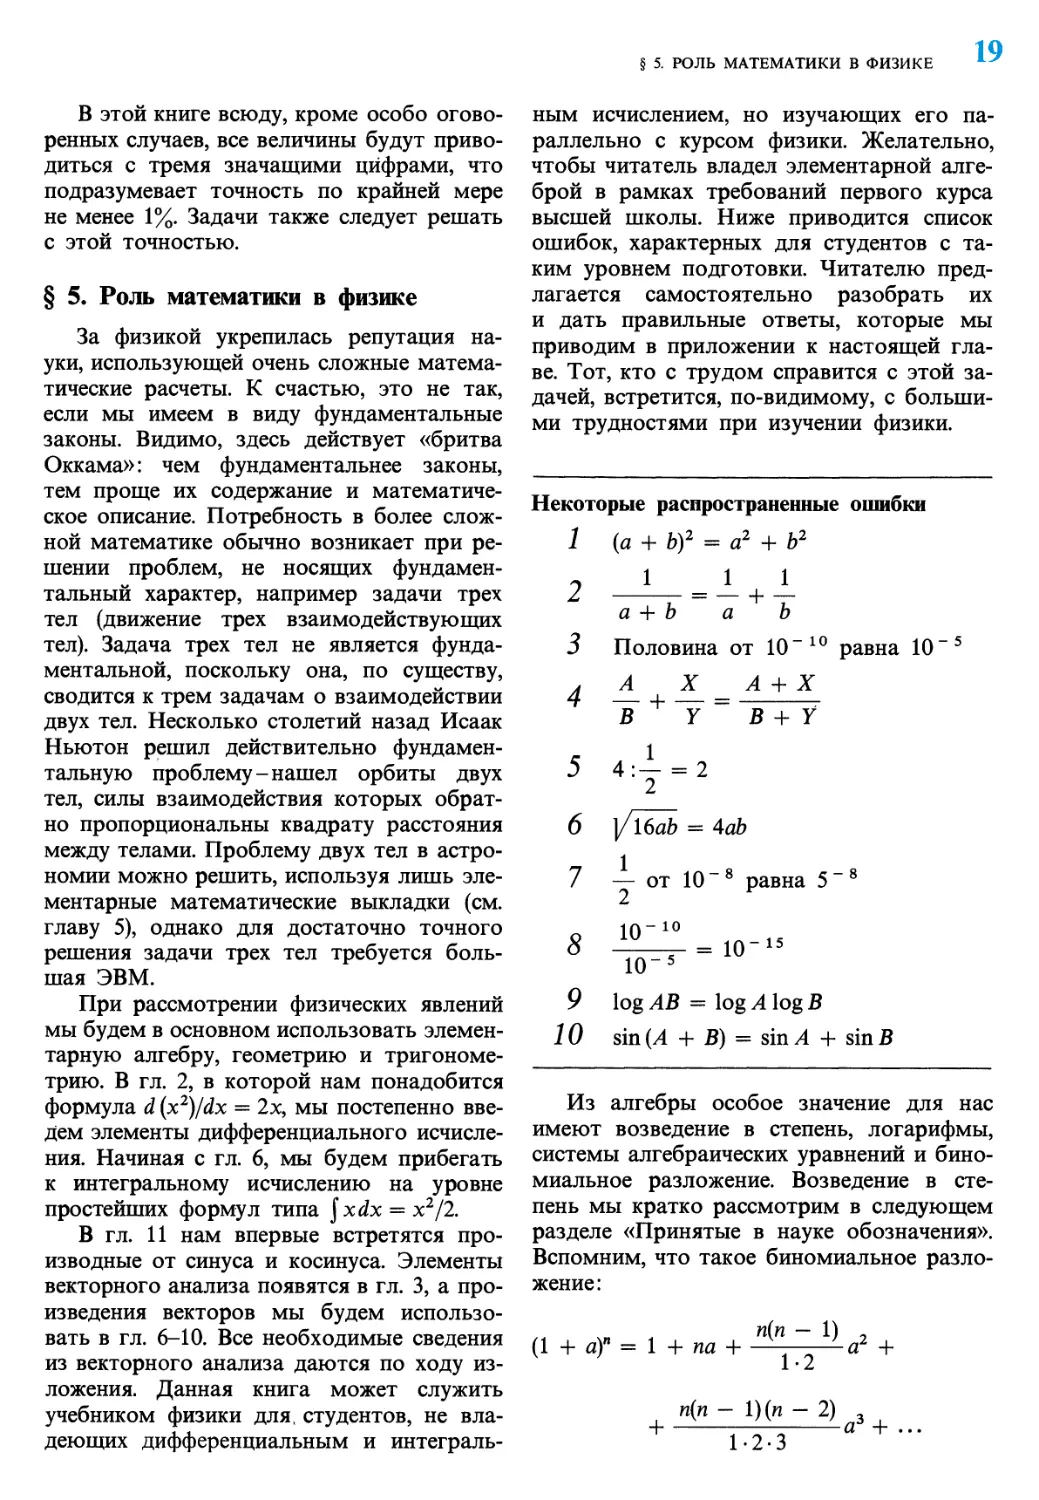 § 5. Роль математики в физике